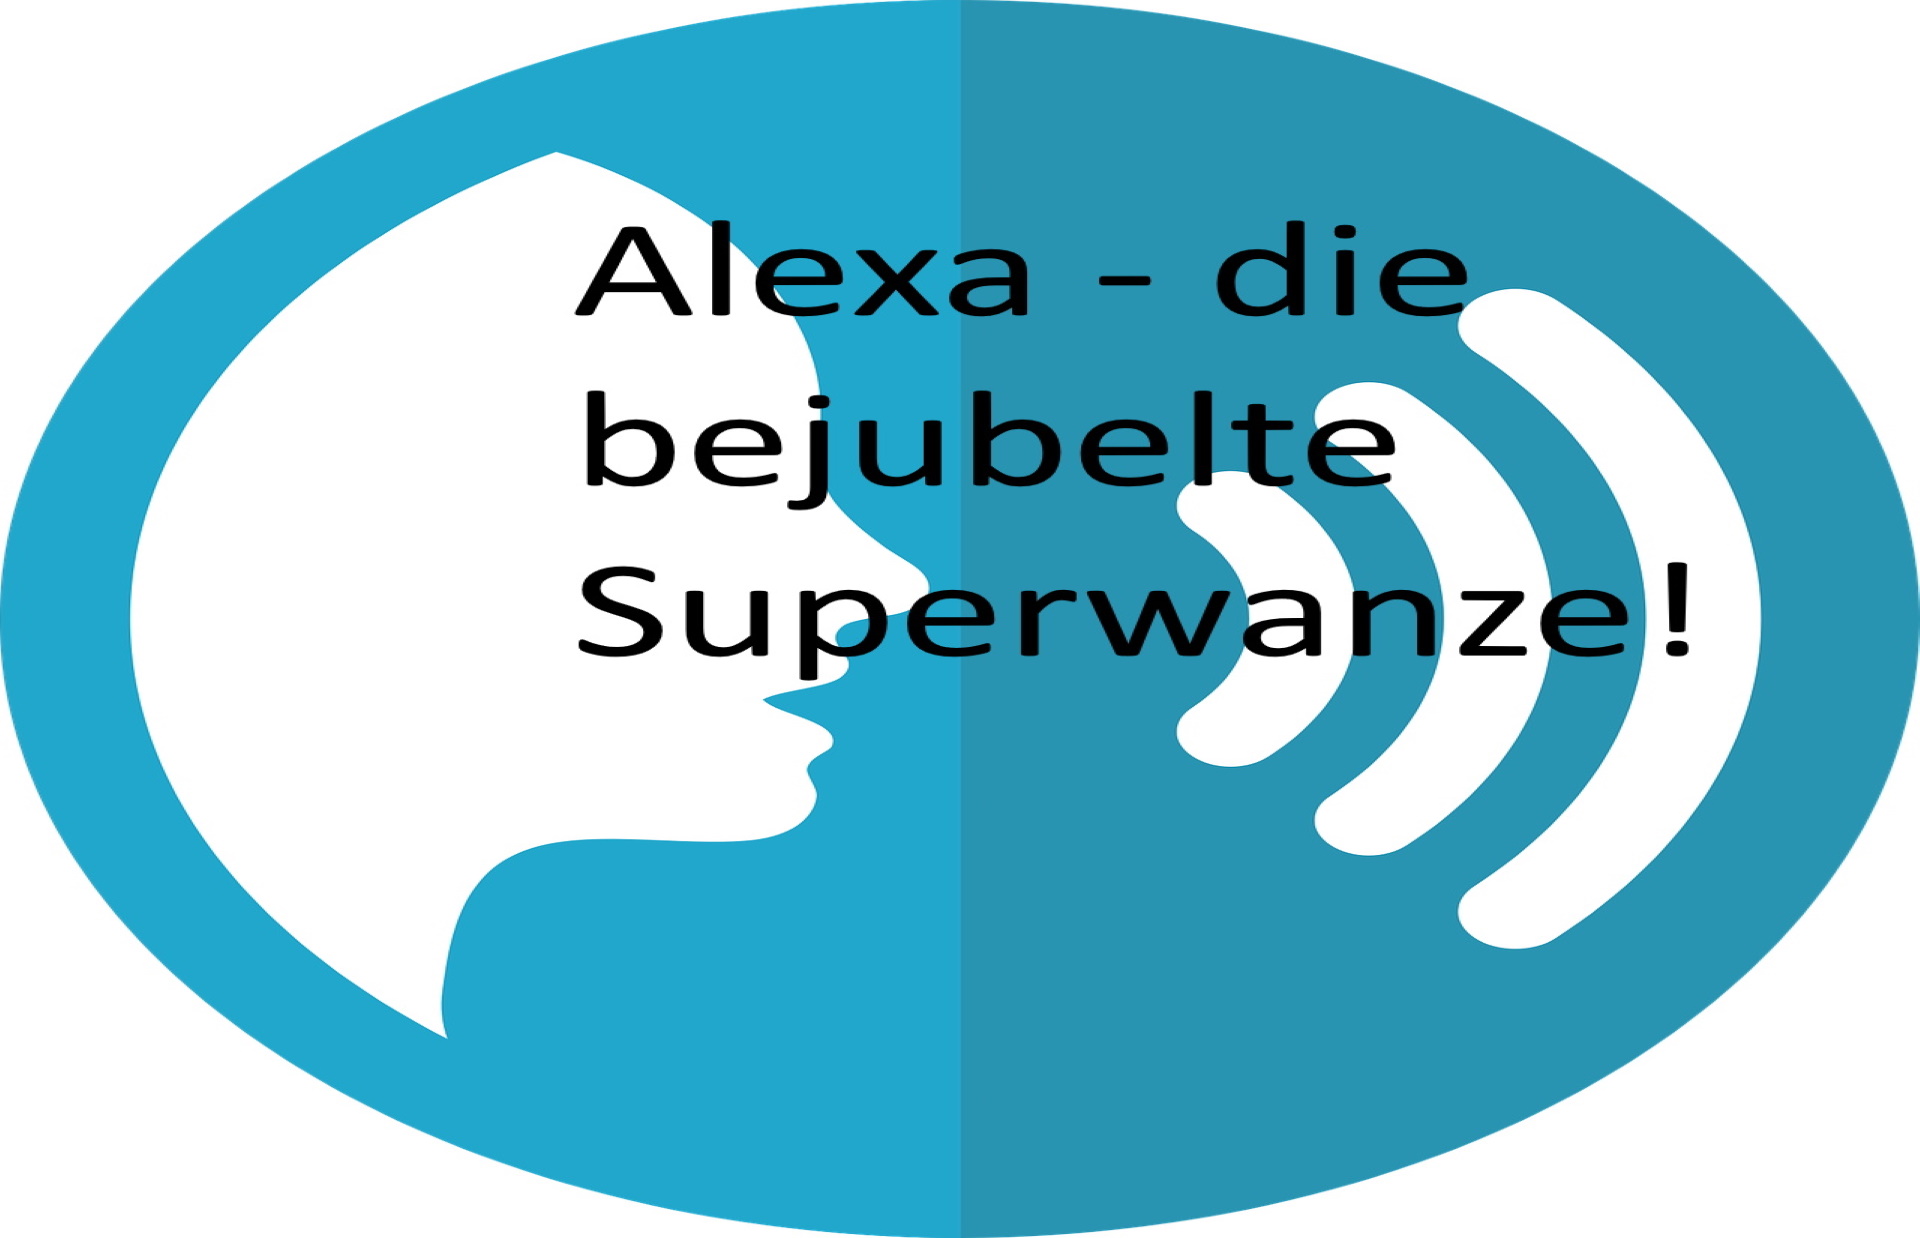 Alexa die Superwanze